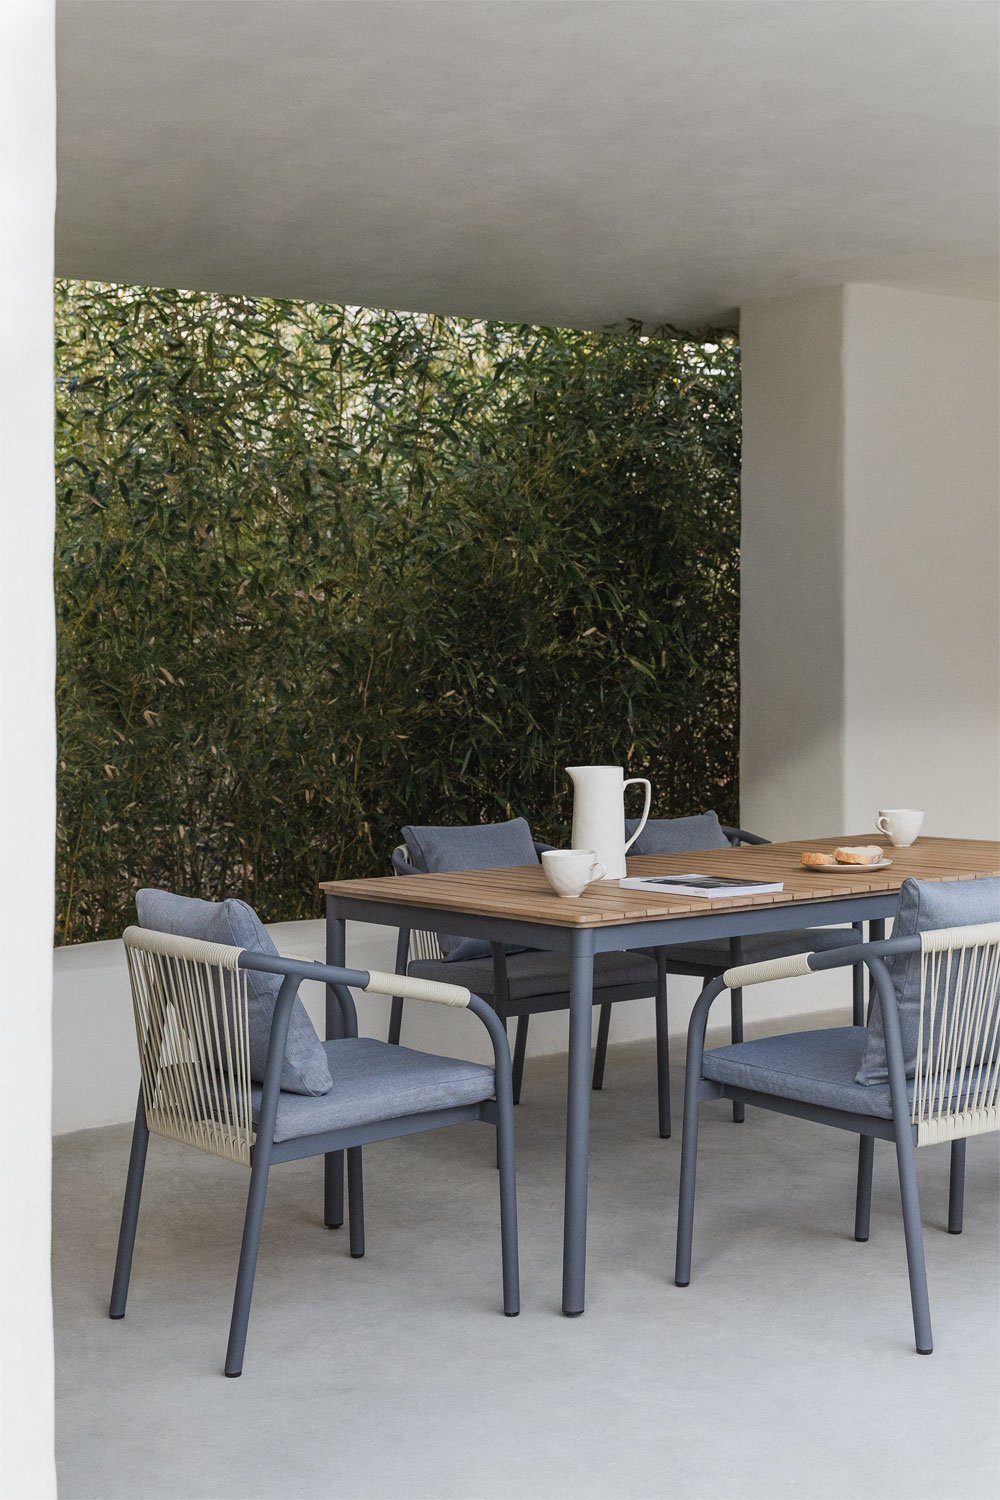 Basper rechthoekige tafelset (180x90 cm) en 6 tuinstoelen in aluminium en acaciahout, galerij beeld 1